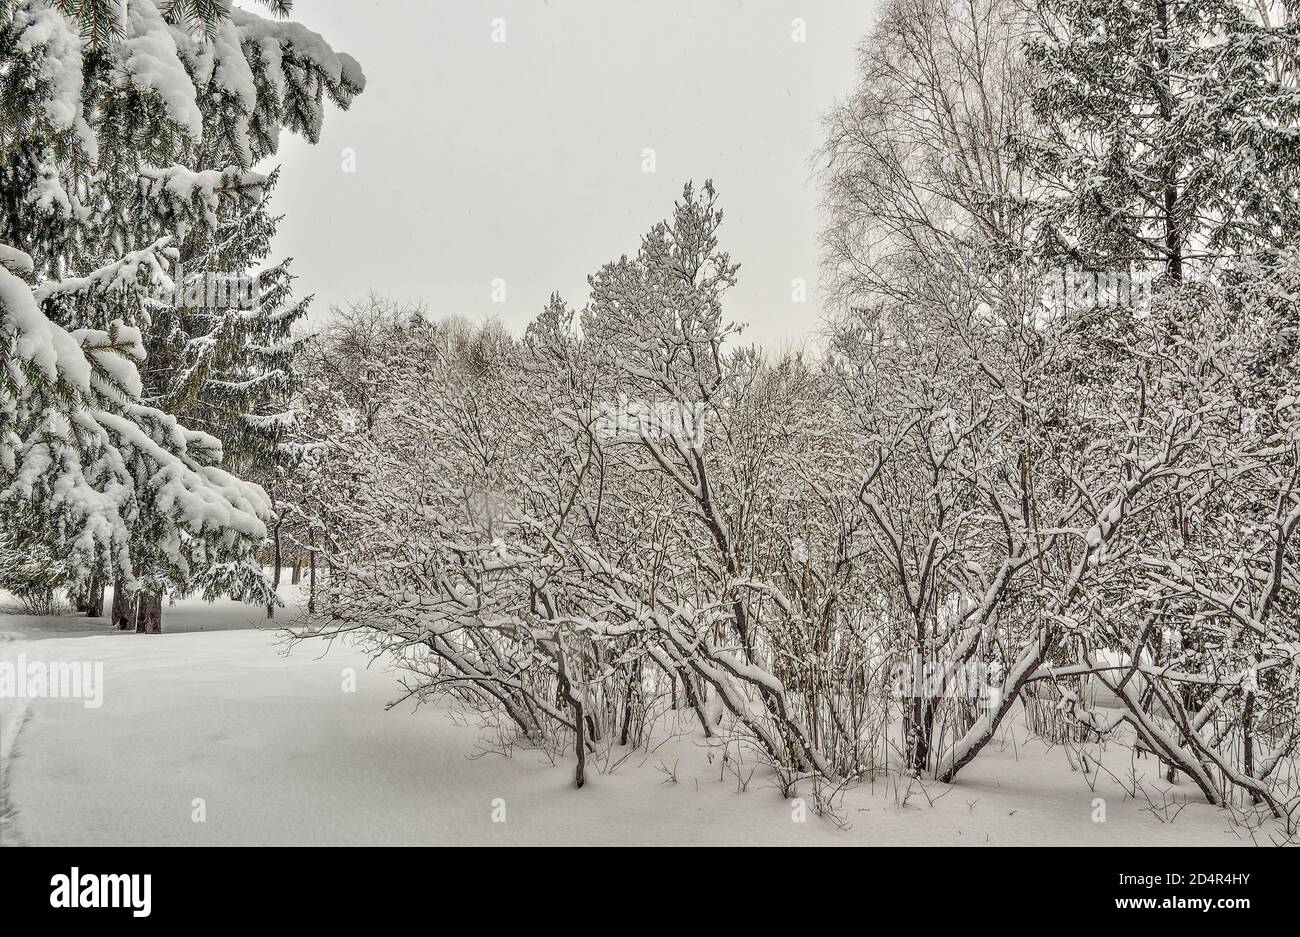 Bellezza del paesaggio invernale nel parco cittadino innevato. Wonderland con neve bianca e alberi ricoperti di brina e cespugli - bella favola invernale. Soffice Foto Stock